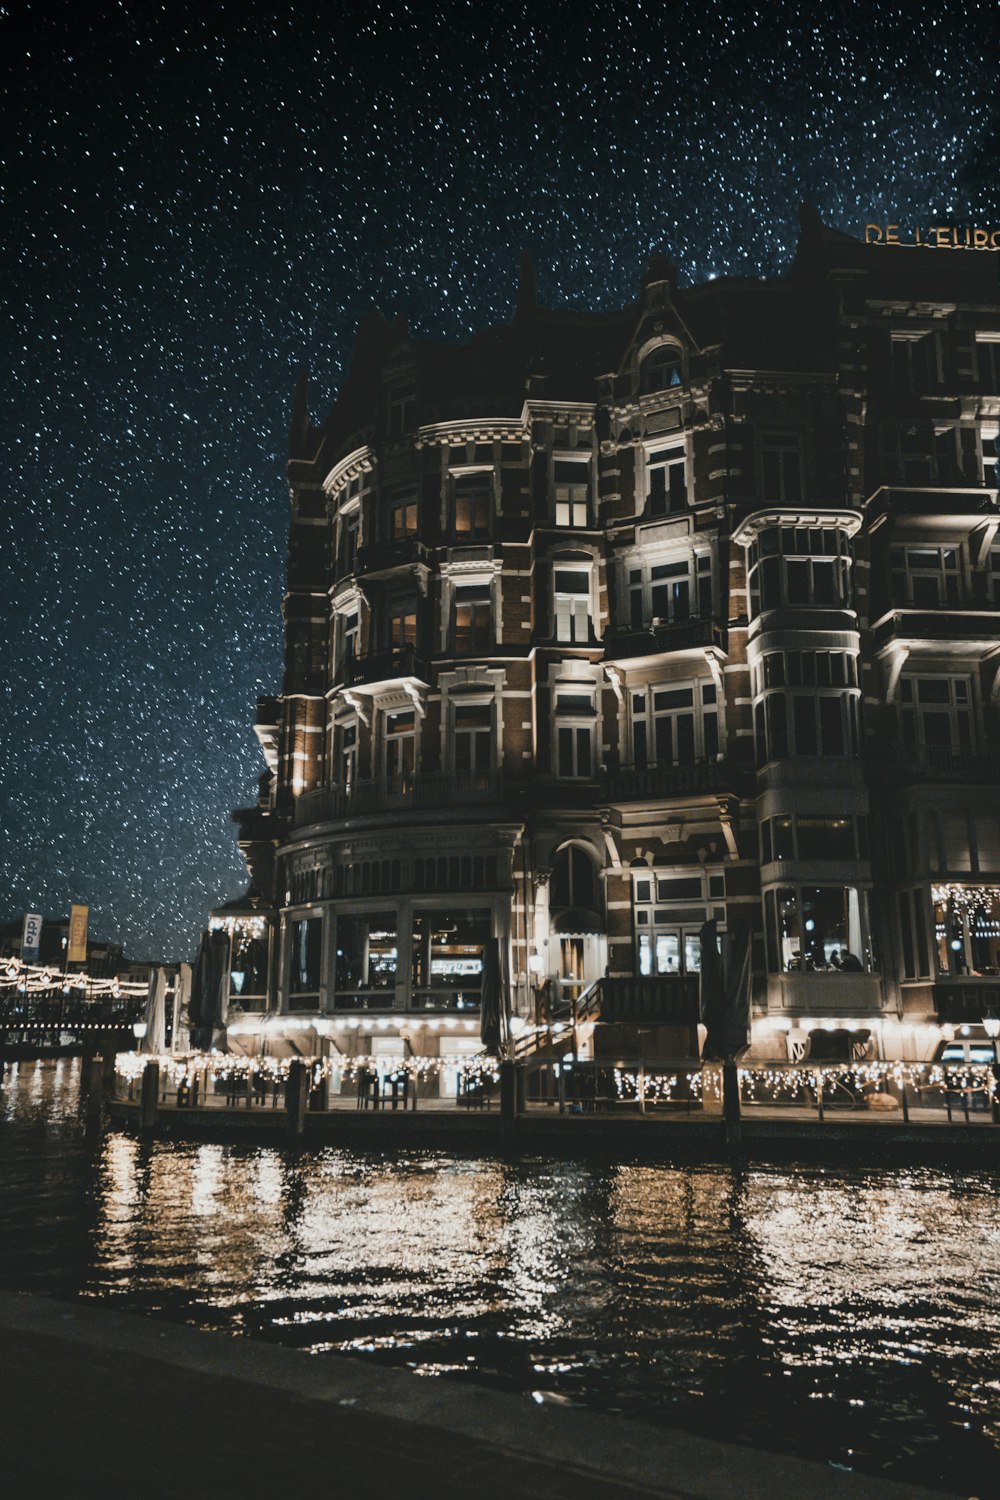 céu noturno estrelado sobre o edifício da loja ao longo do rio